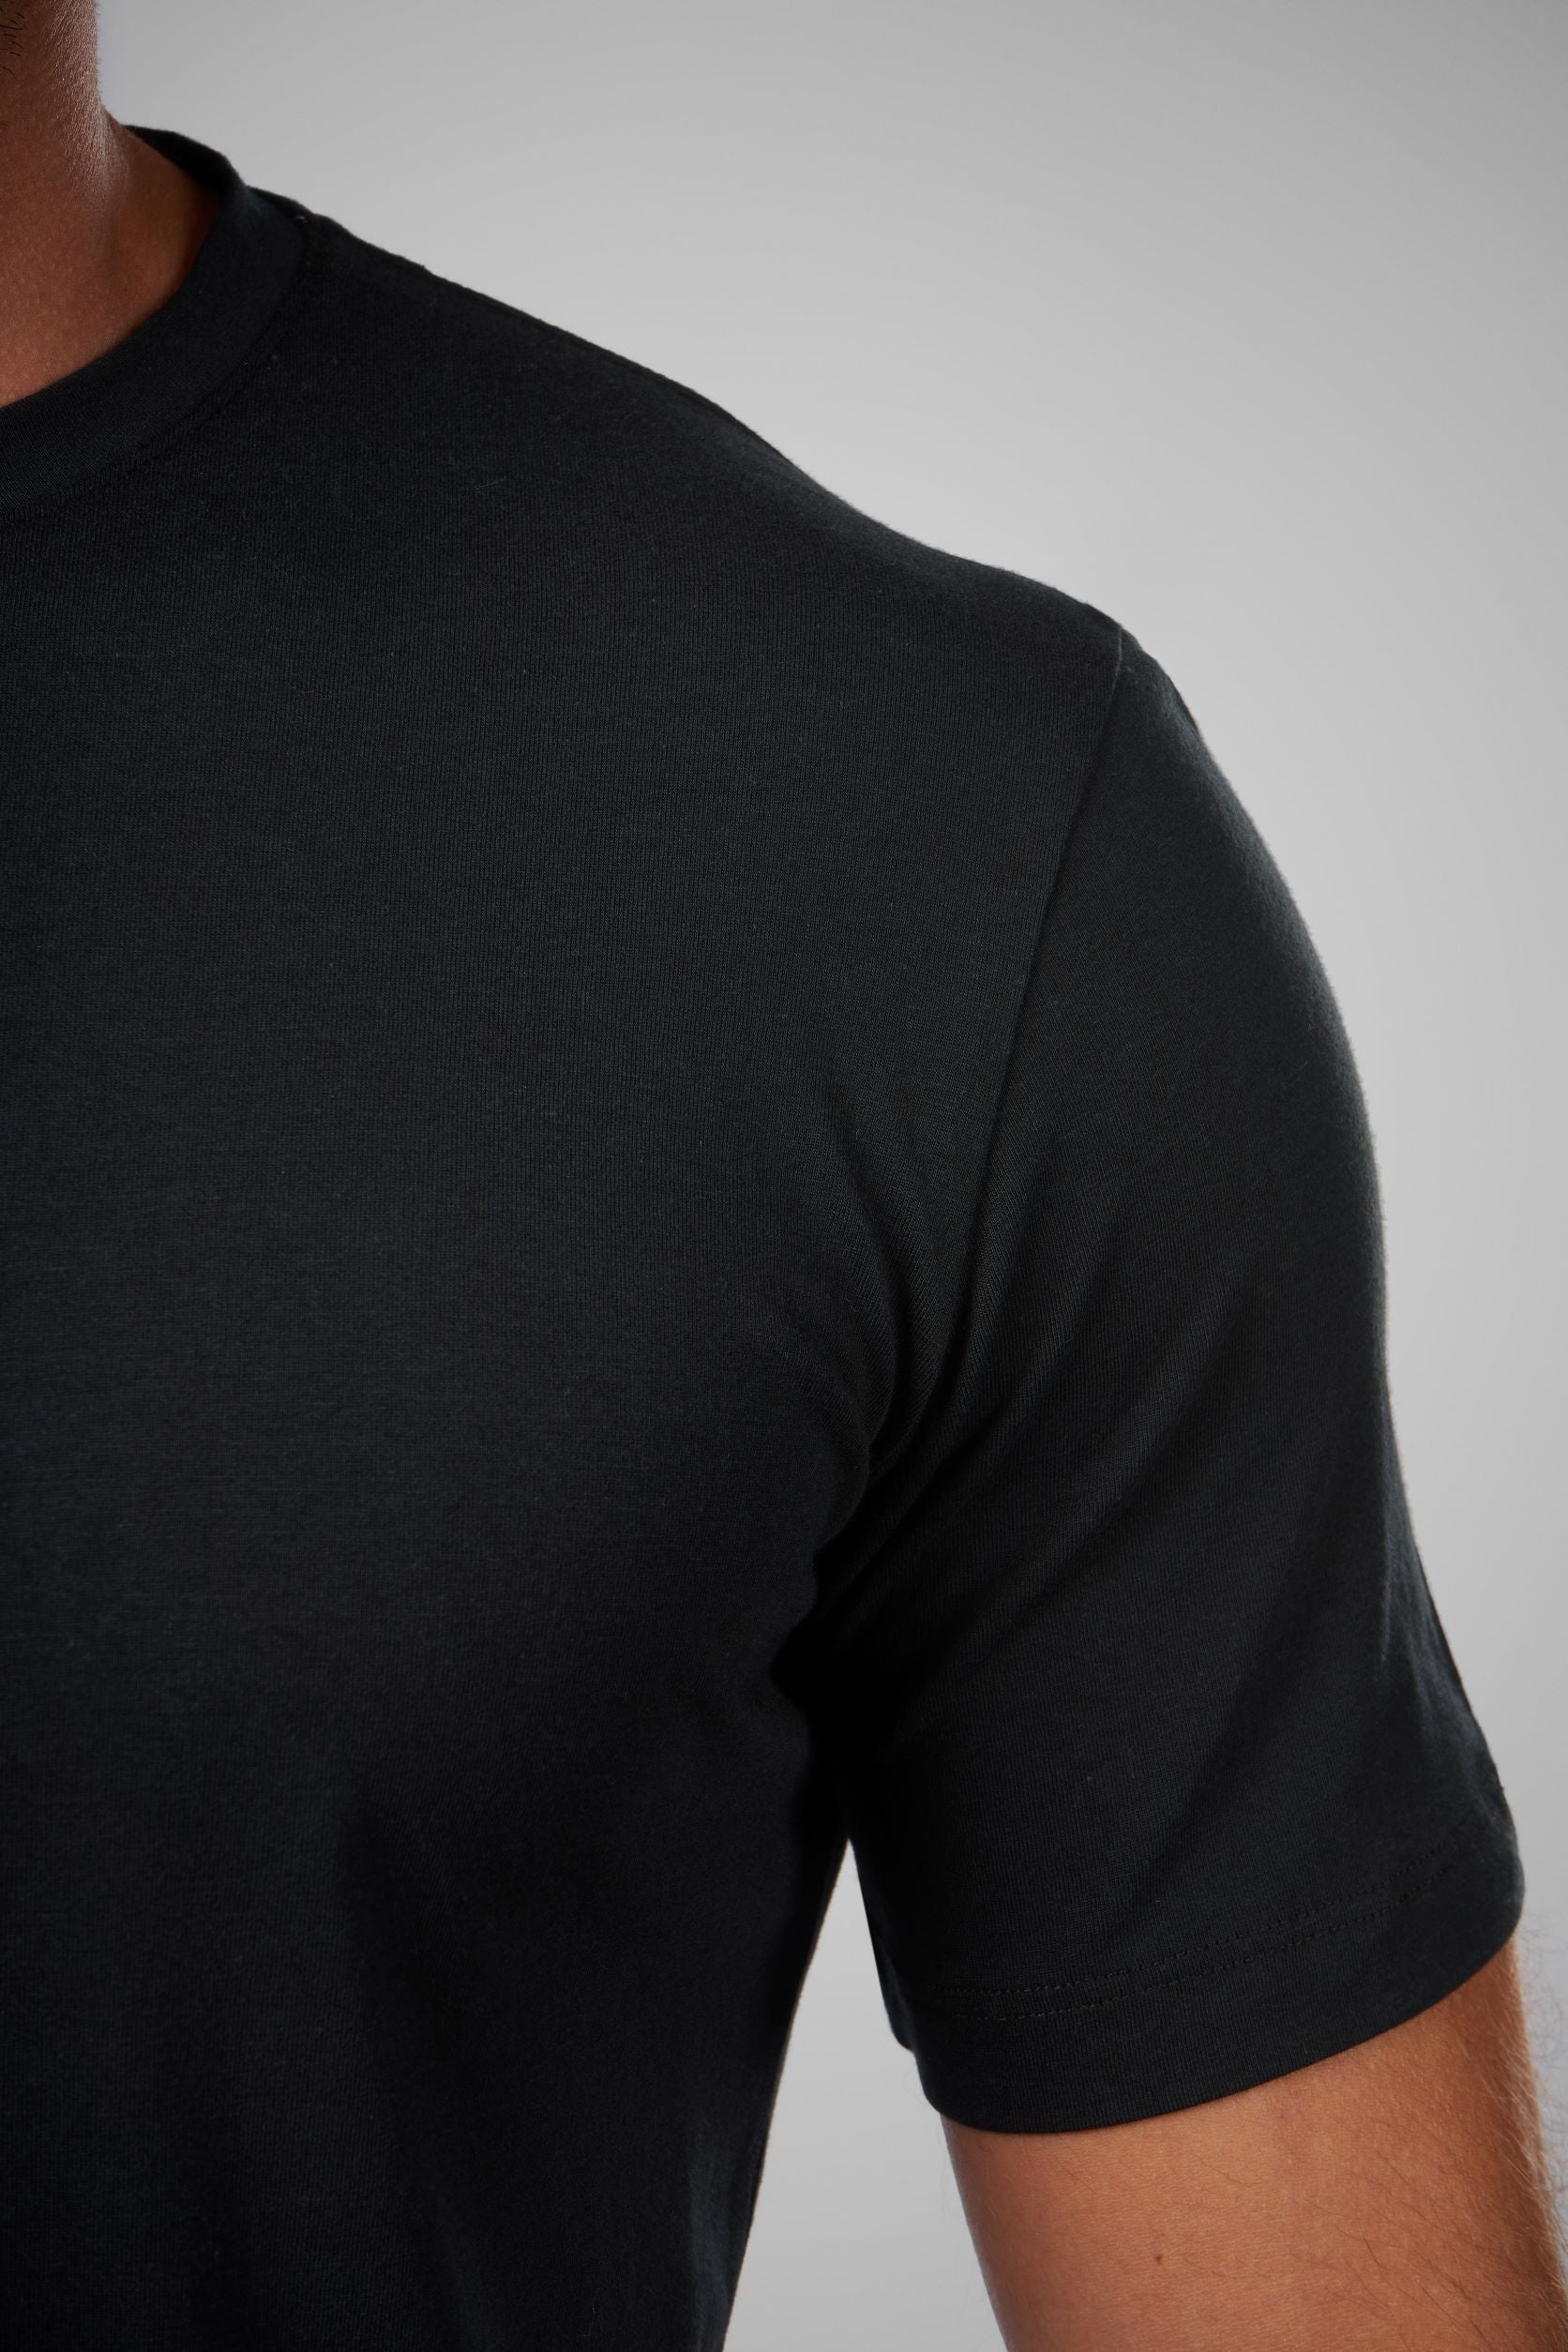 T-Shirt Basic Round Neck(09)